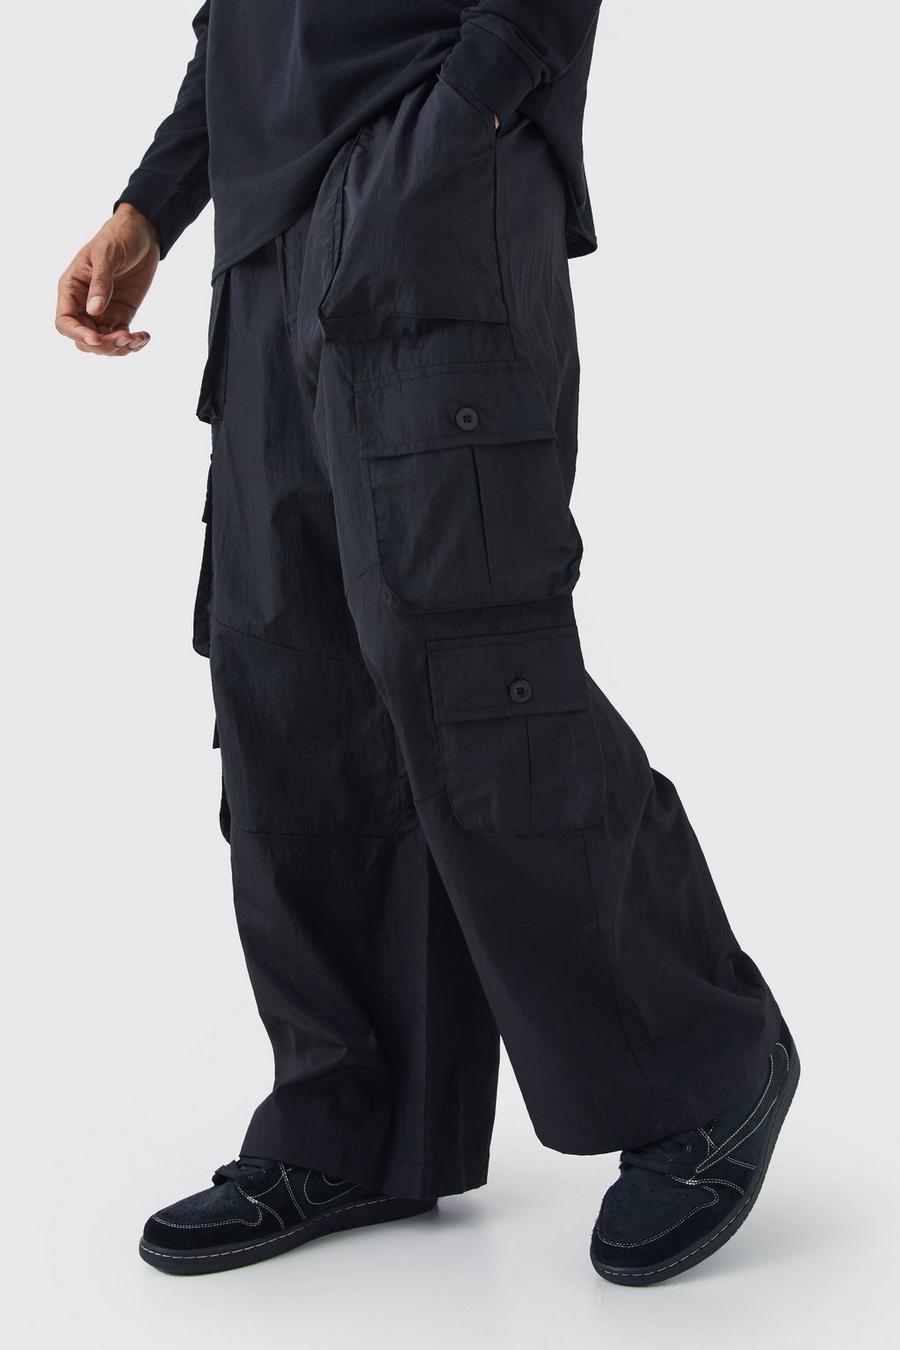 Pantalon cargo à poches multiples, Black